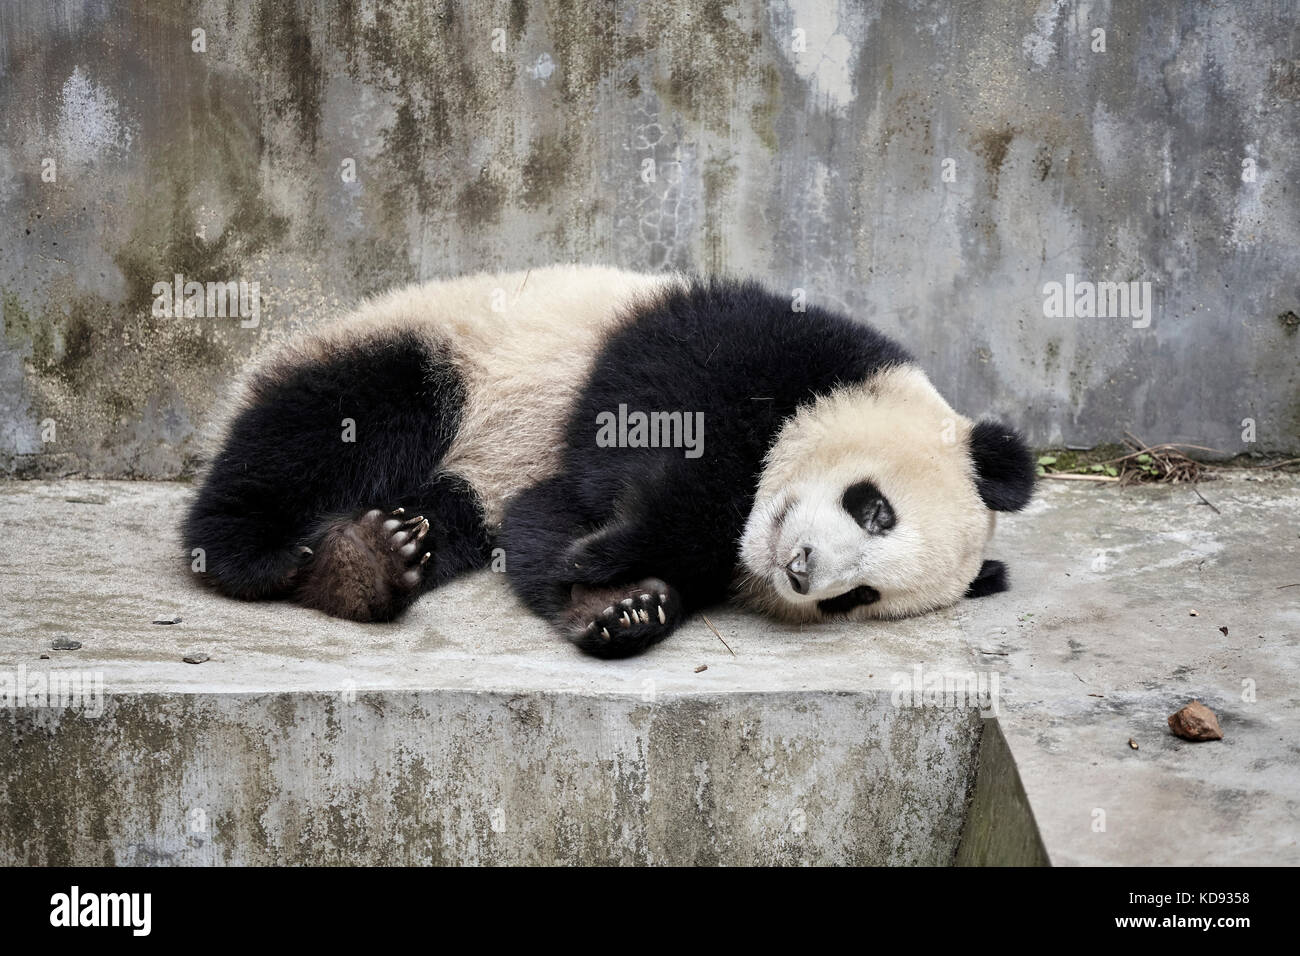 Appoggio panda gigante di Chengdu, in Cina. Foto Stock